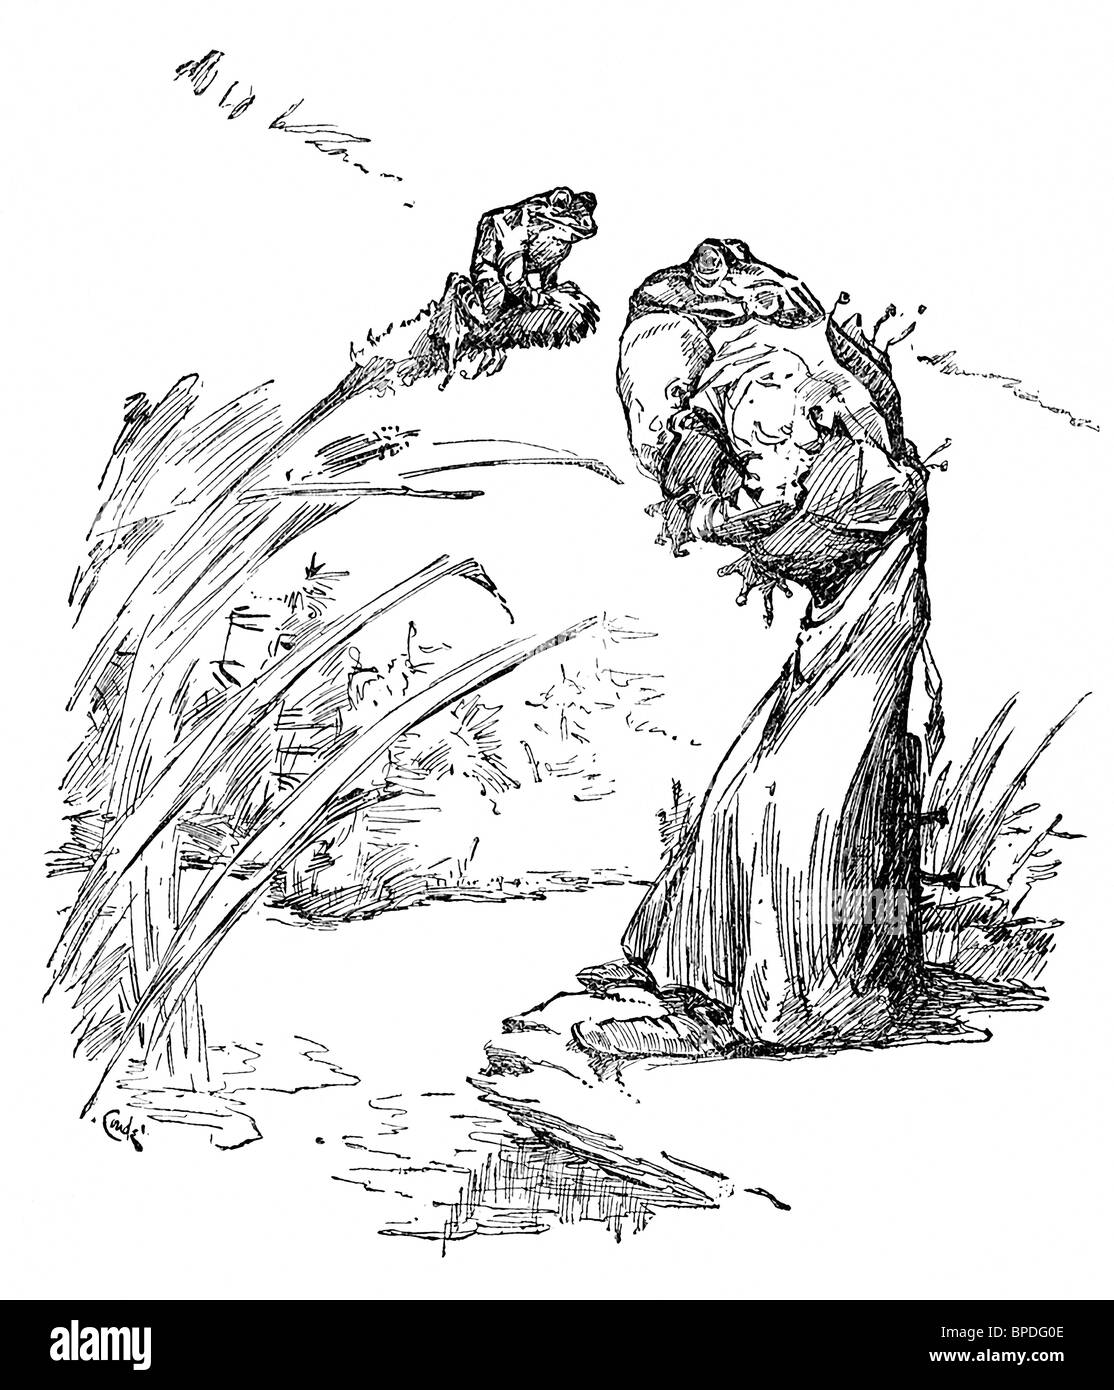 J.M. Conde, nel 1905, ha illustrato i racconti del leggendario fablist greco Esopo, compresa la storia del bue e la rana. Foto Stock